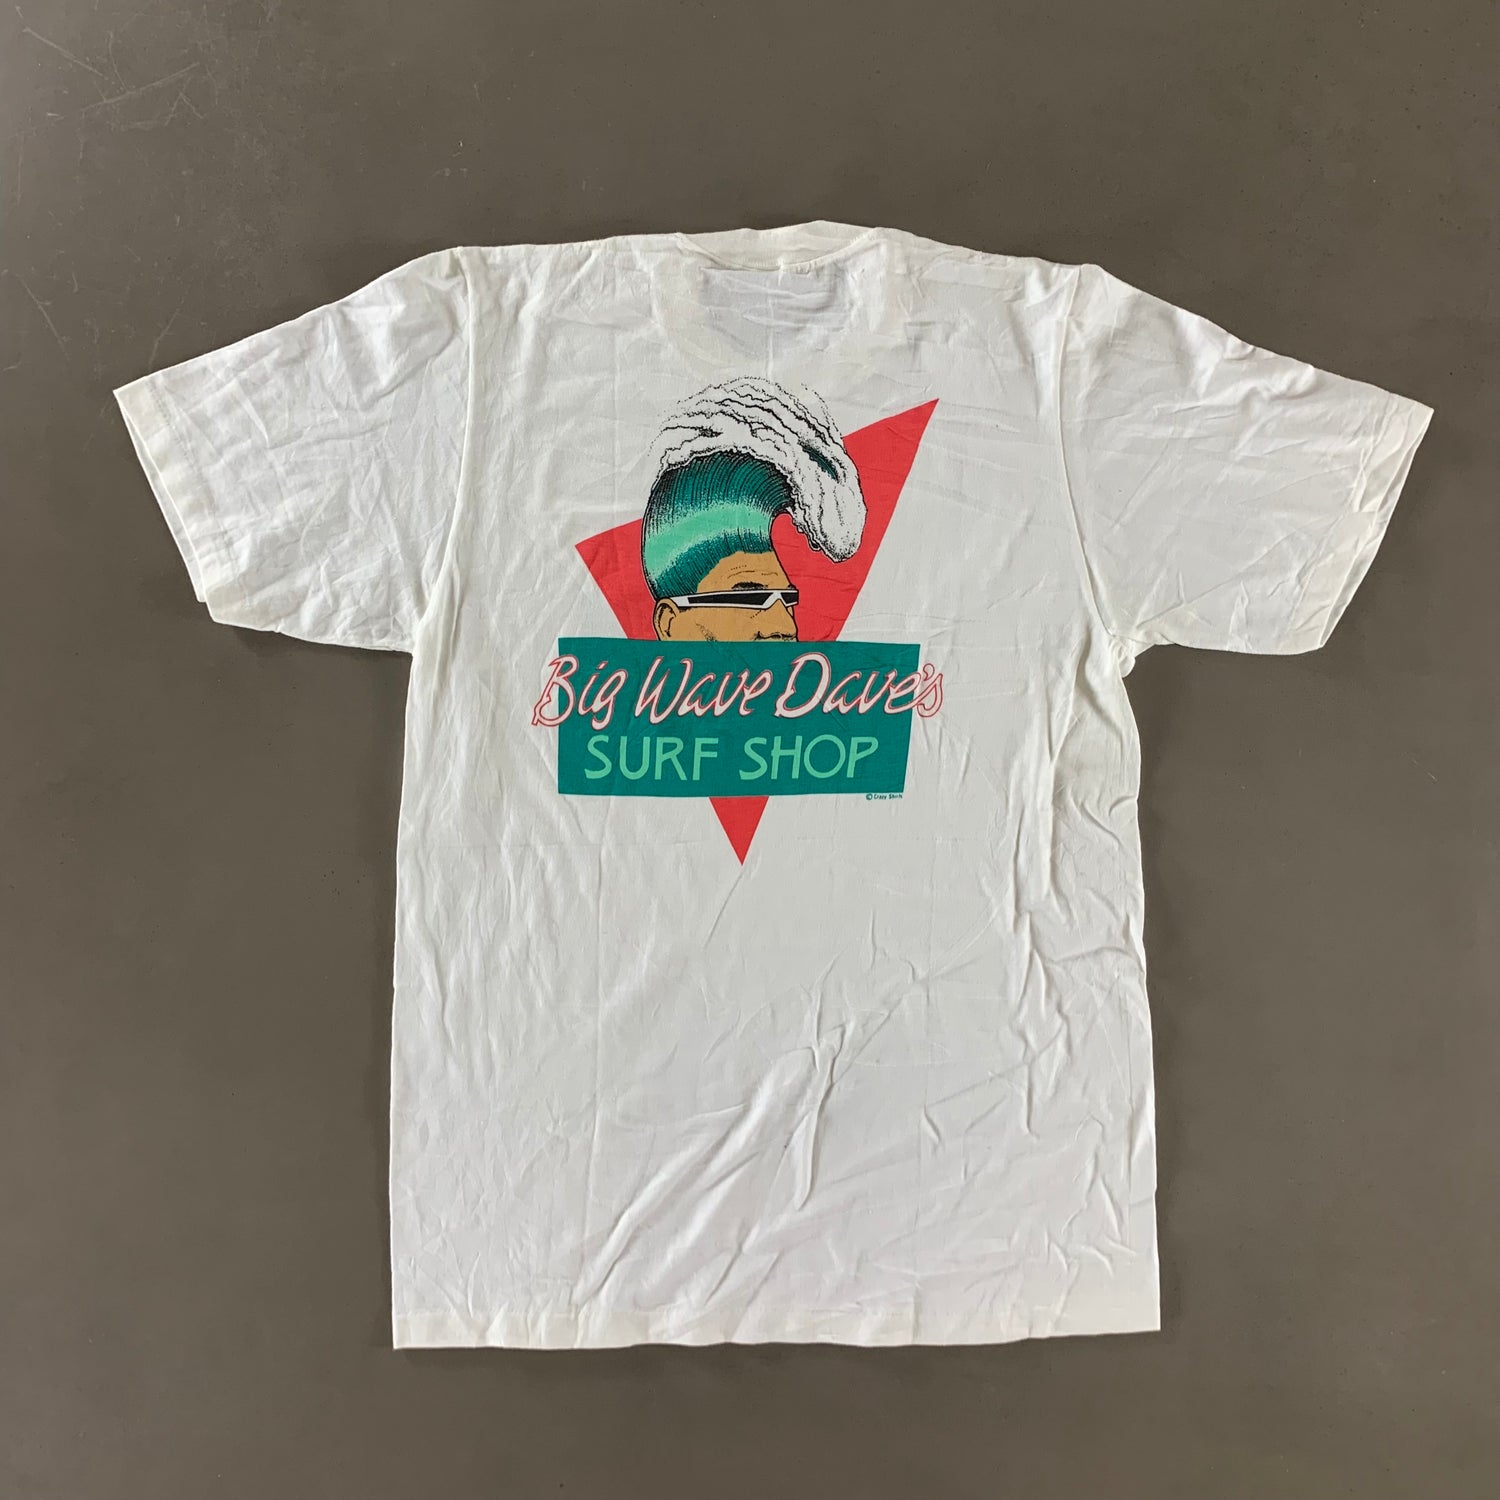 Vintage 1980s Surf Shop T-shirt size Medium